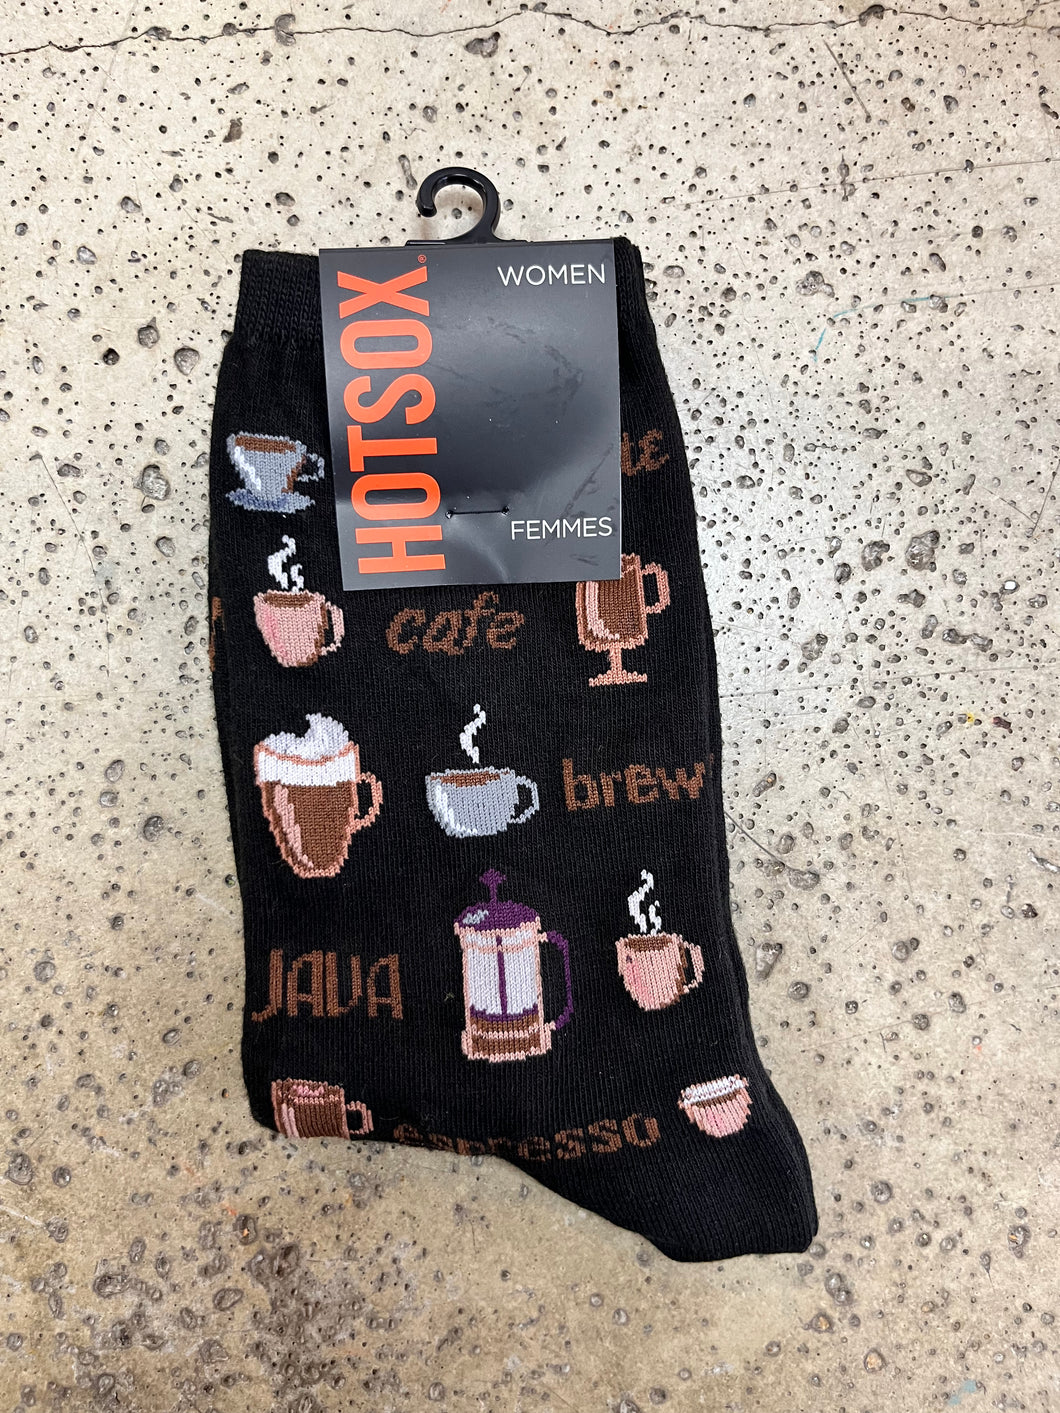 HotSox- Coffee Socks